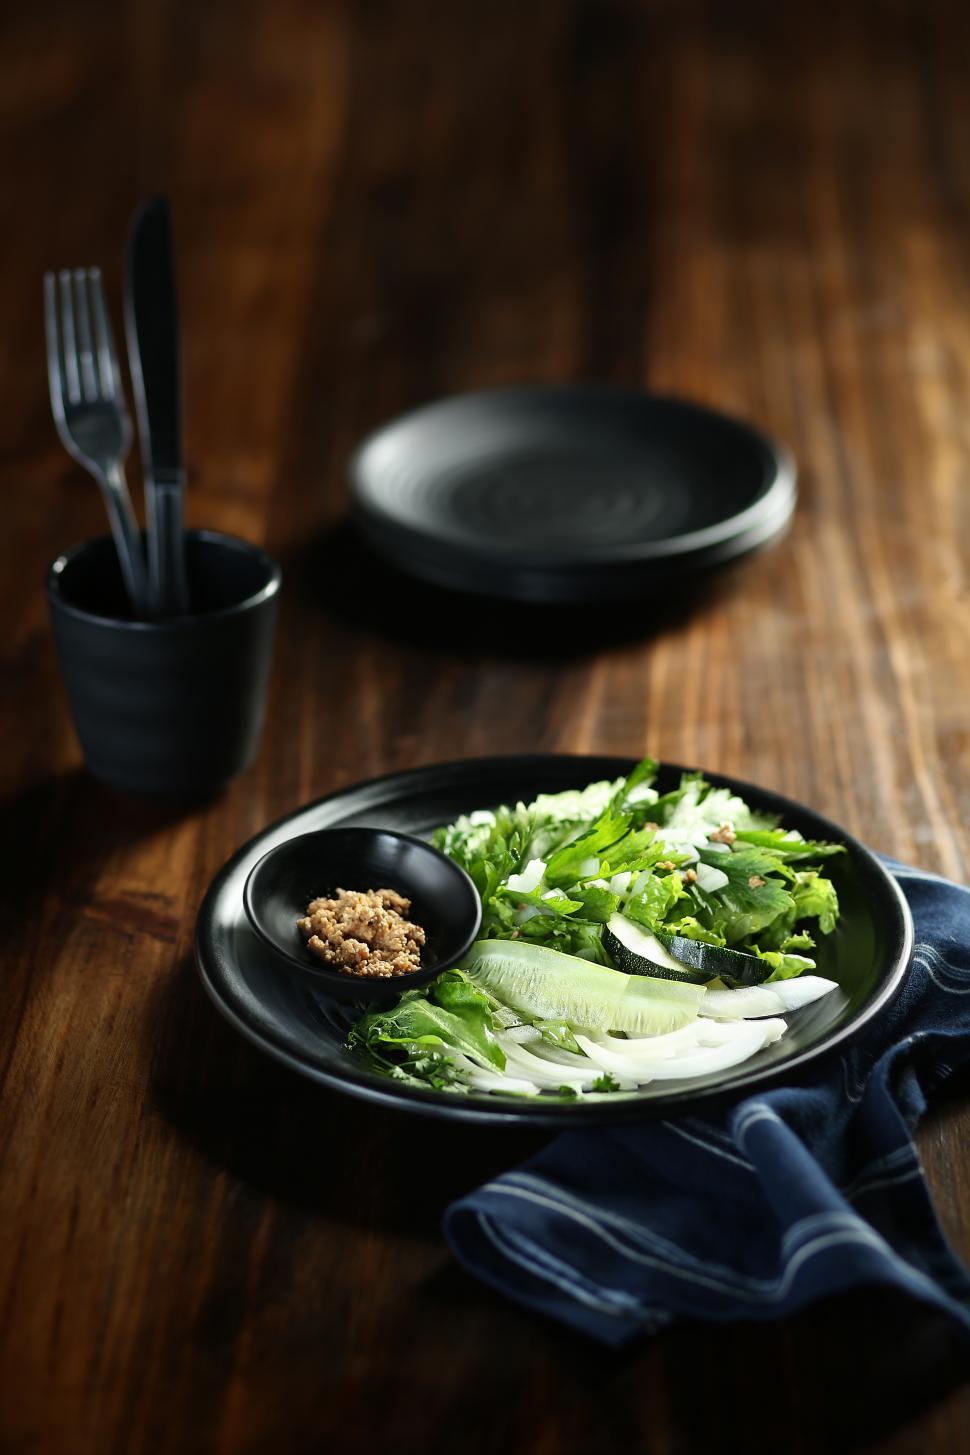 Free Image of Lettuce salad on black serving plate 